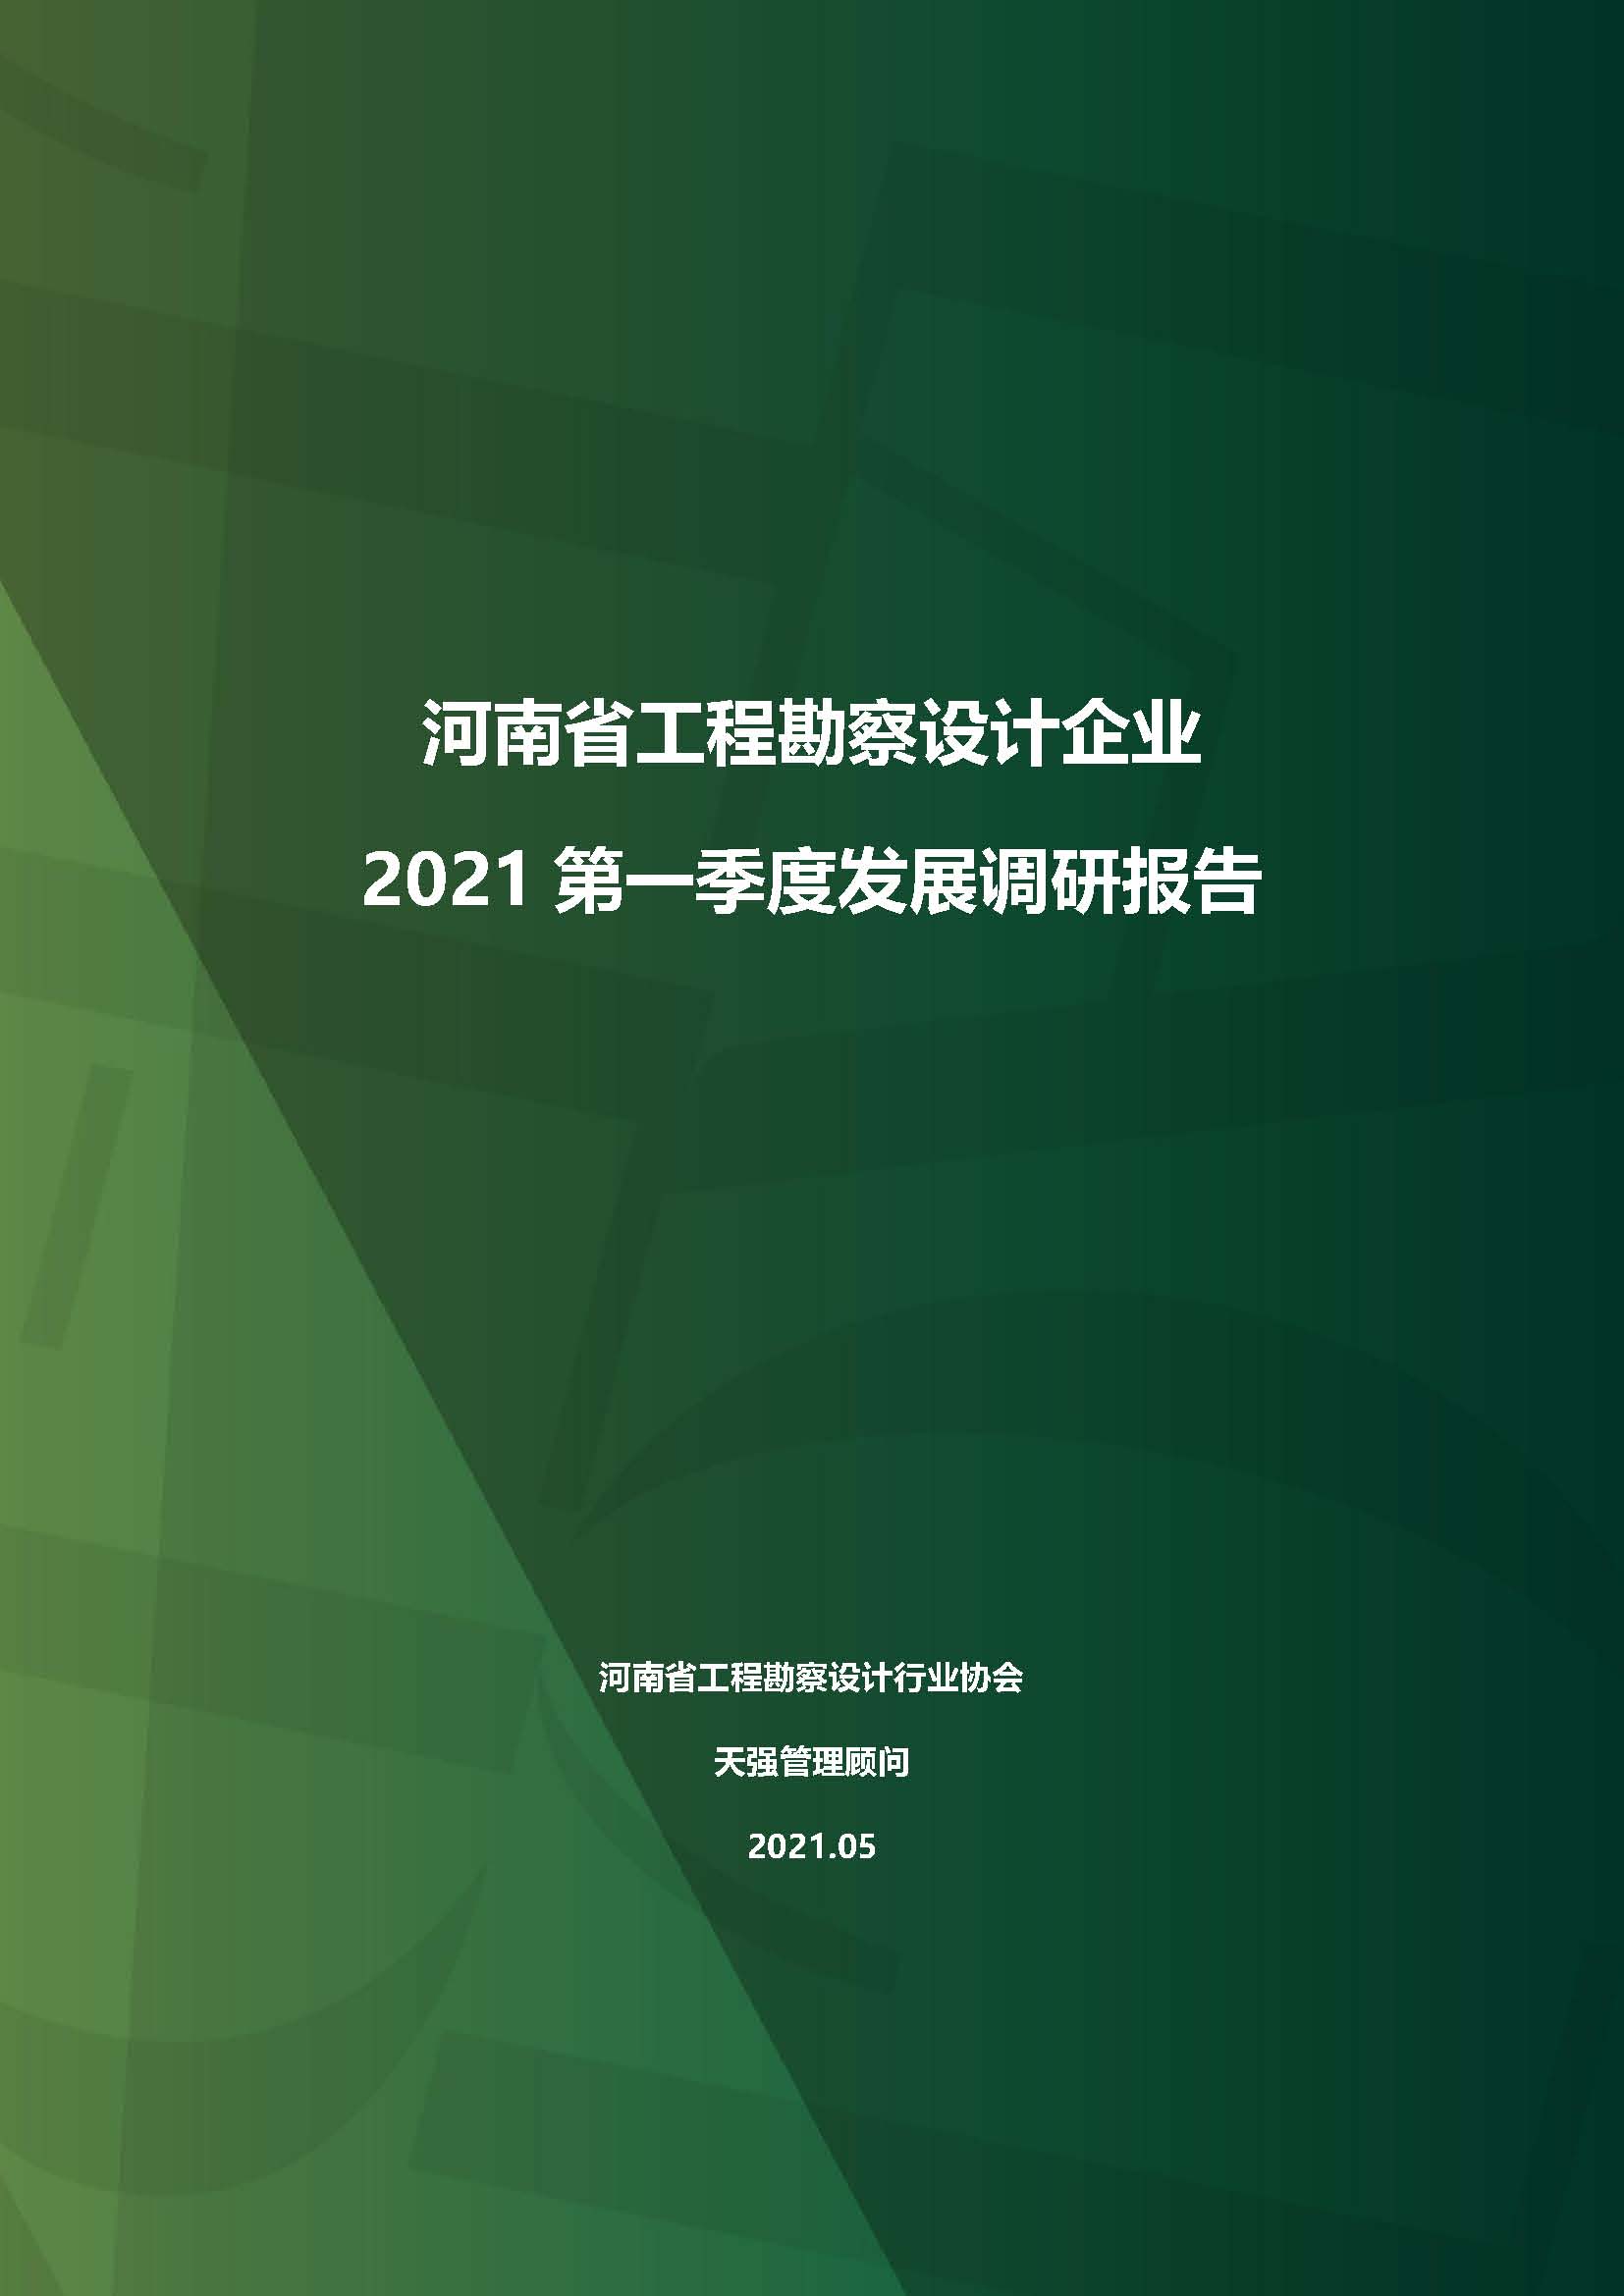 河南省工程勘察设计企业2021第一季度发展调研报告二_页面_1.jpg